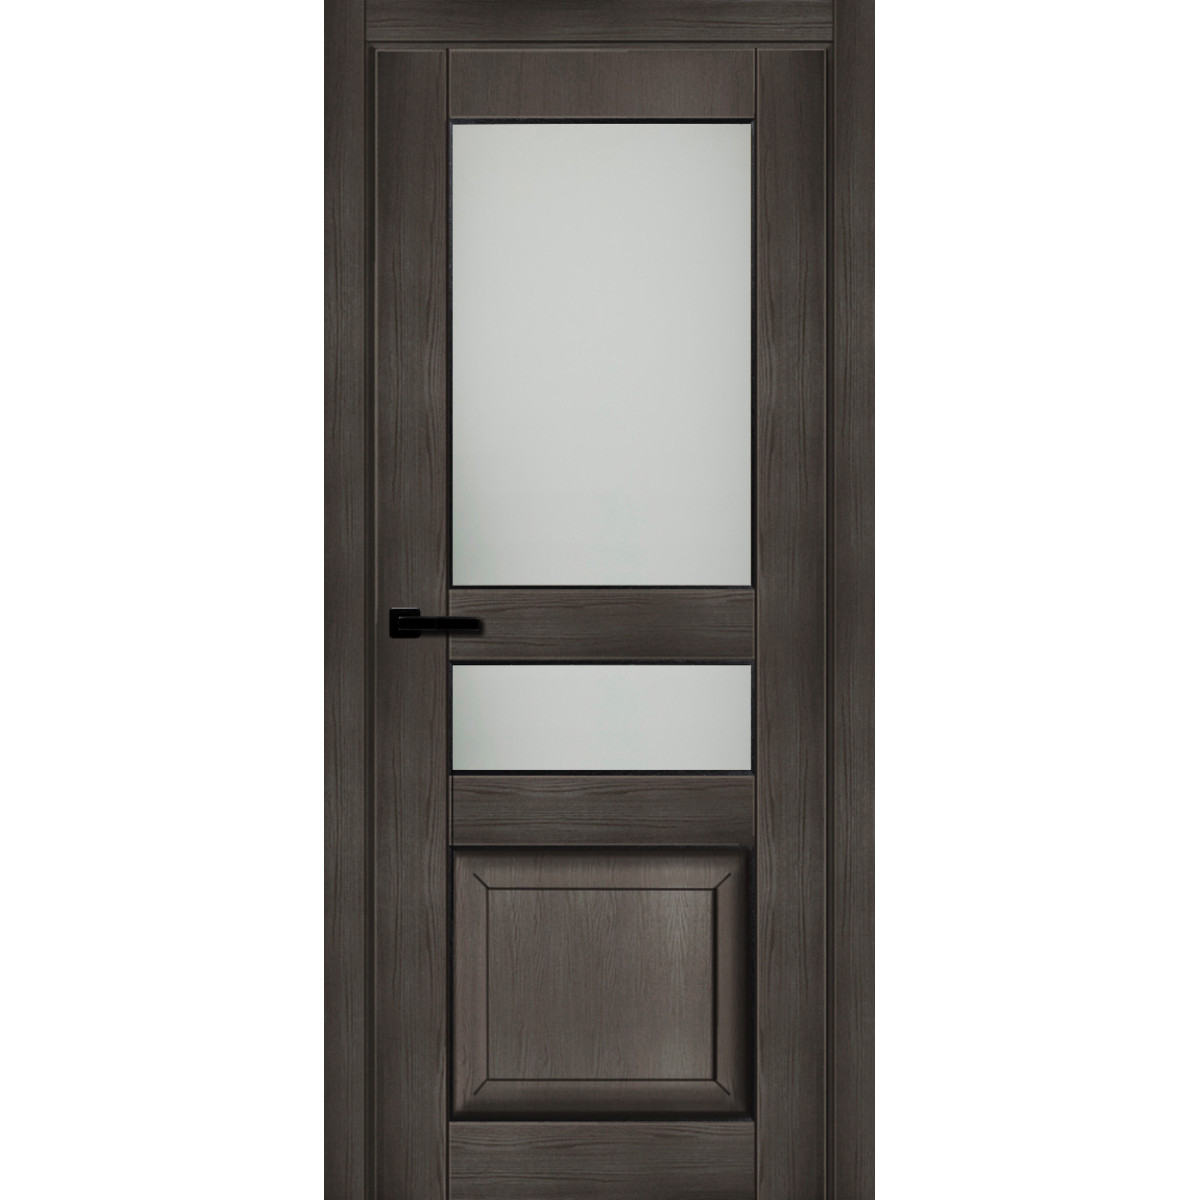 Дверь межкомнатная остеклённая с замком в комплекте Дерби 2000x800 мм CPL цвет дуб чёрный матовый